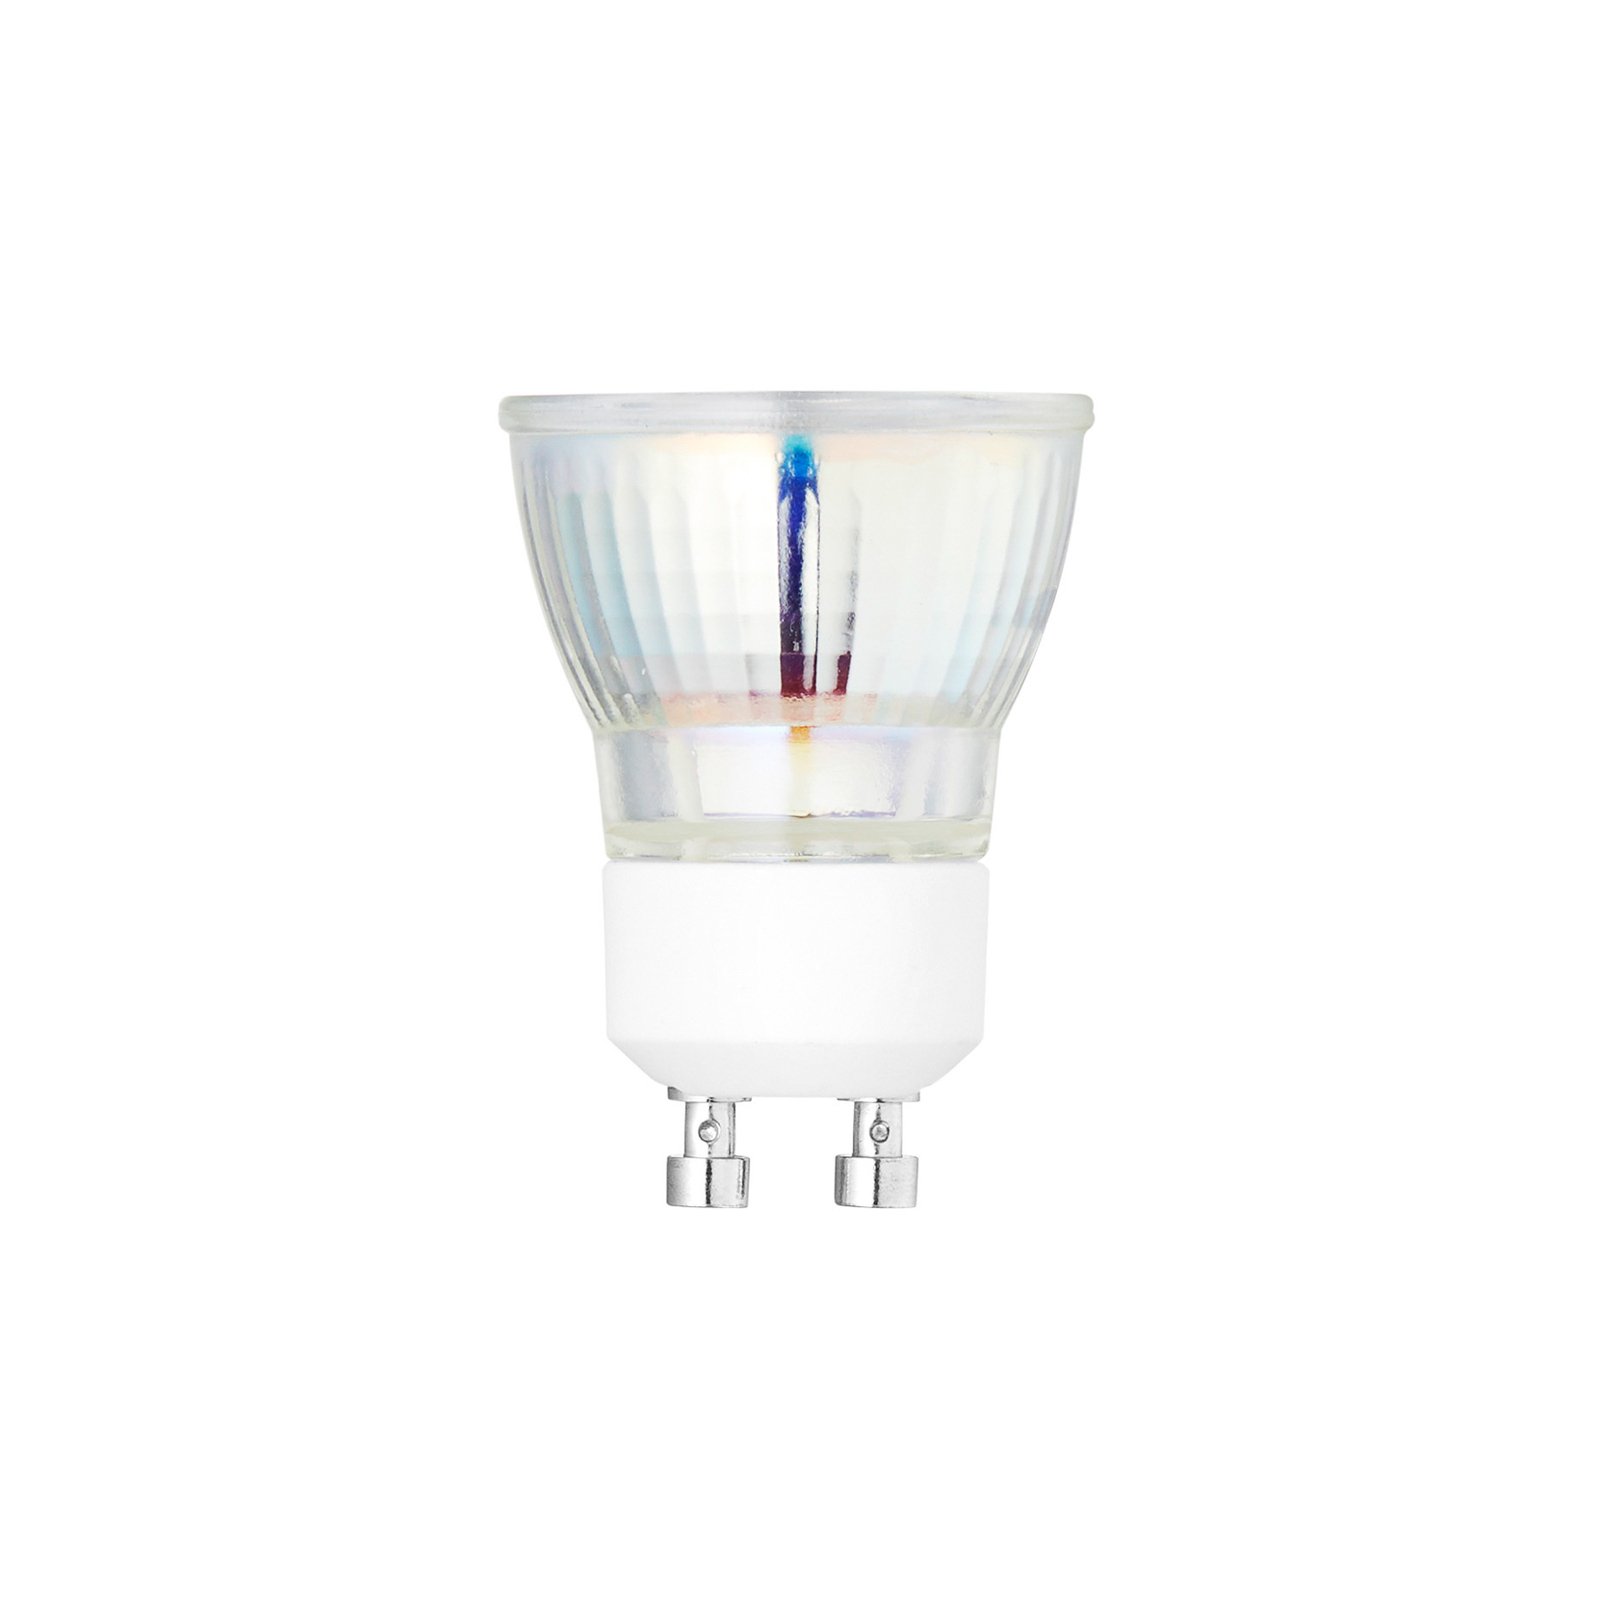 LED reflectorlamp Mini Spot, GU10, 5 W, 3.000 K, dimbaar